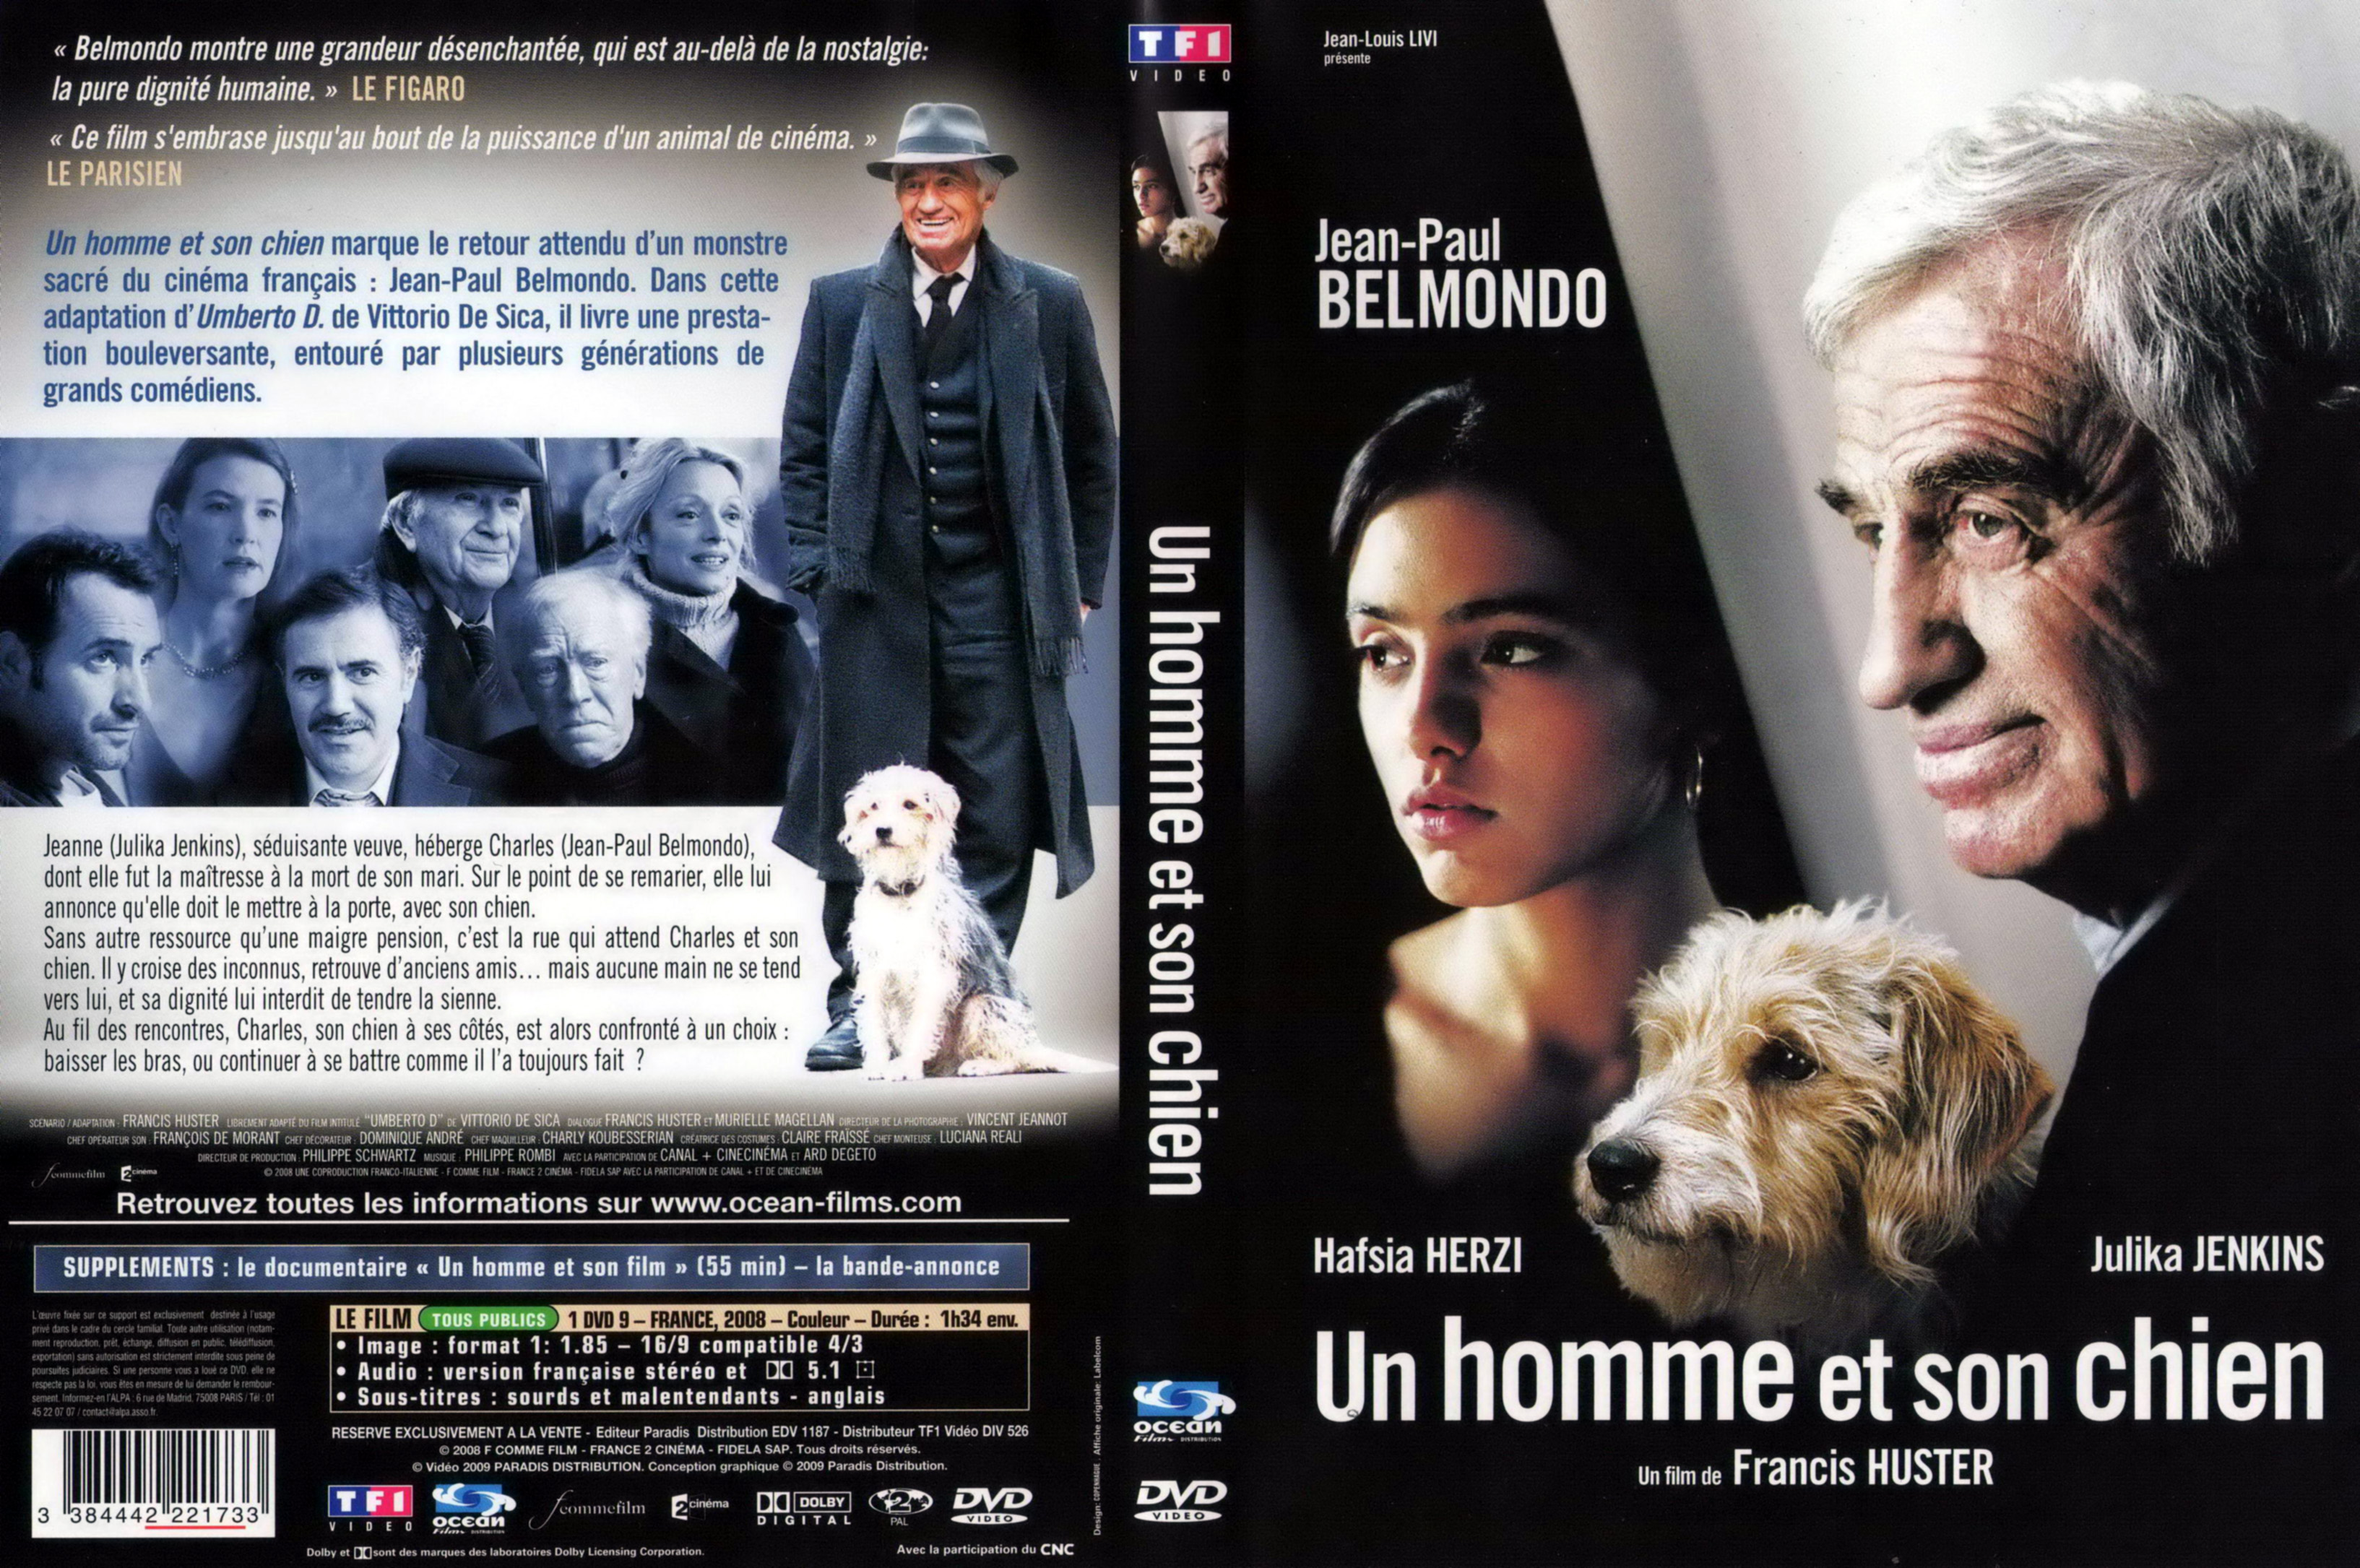 Jaquette DVD Un homme et son chien